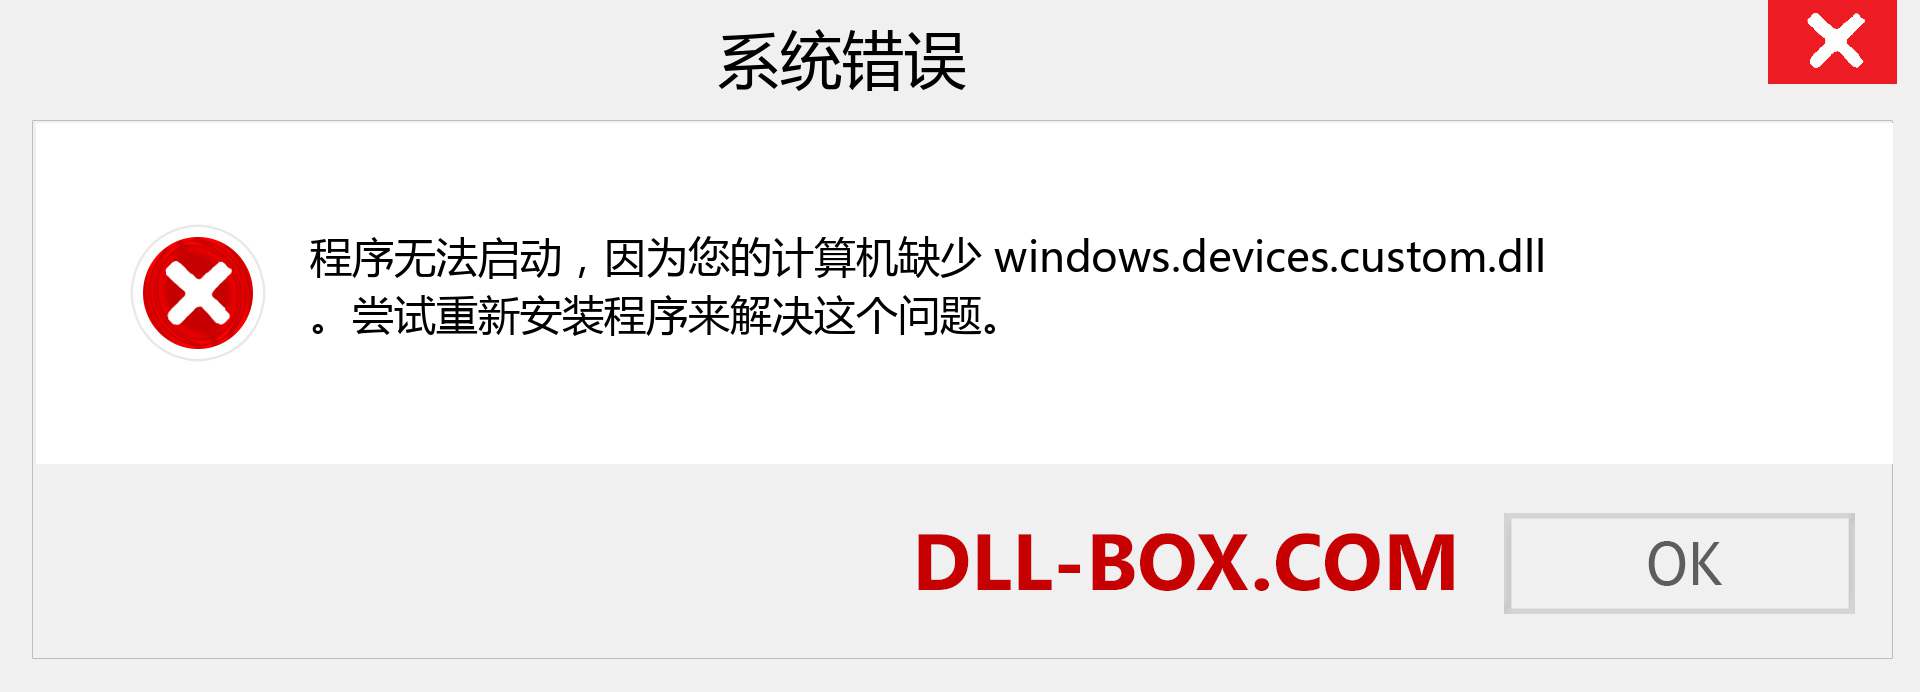 windows.devices.custom.dll 文件丢失？。 适用于 Windows 7、8、10 的下载 - 修复 Windows、照片、图像上的 windows.devices.custom dll 丢失错误